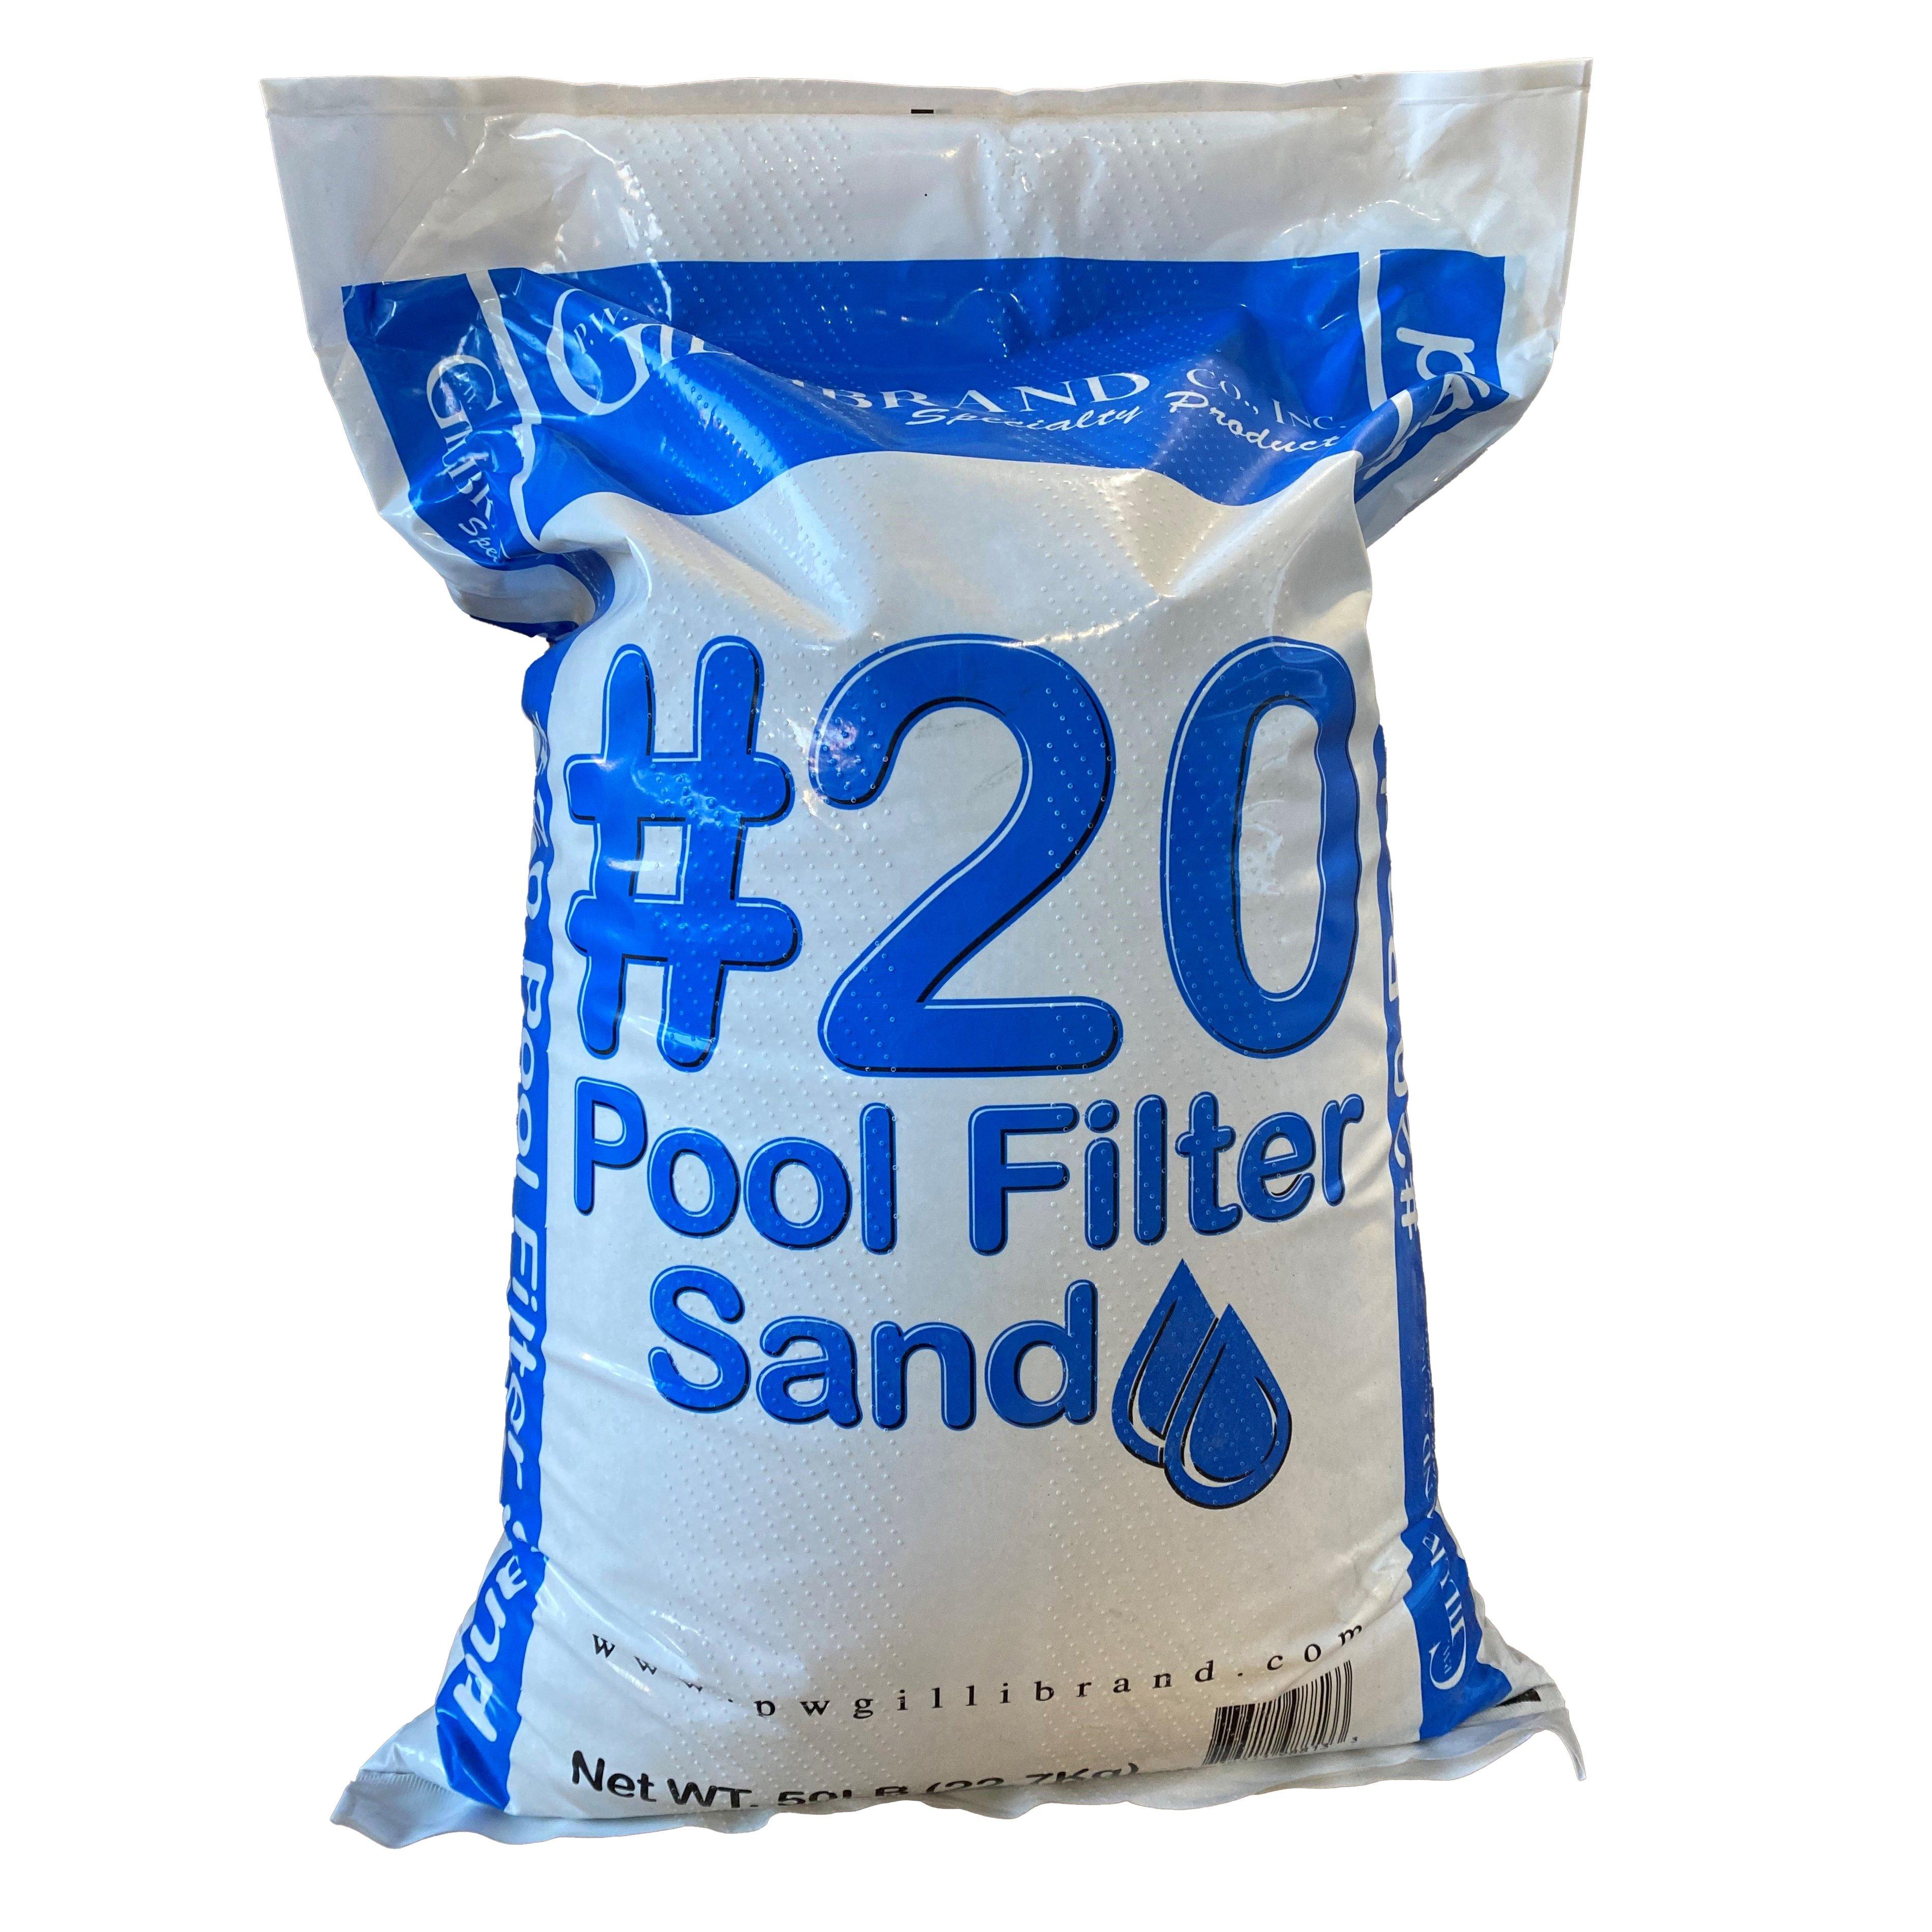 P.W Gillibrand  Silica Pool Filter Sand 50 lb Bag